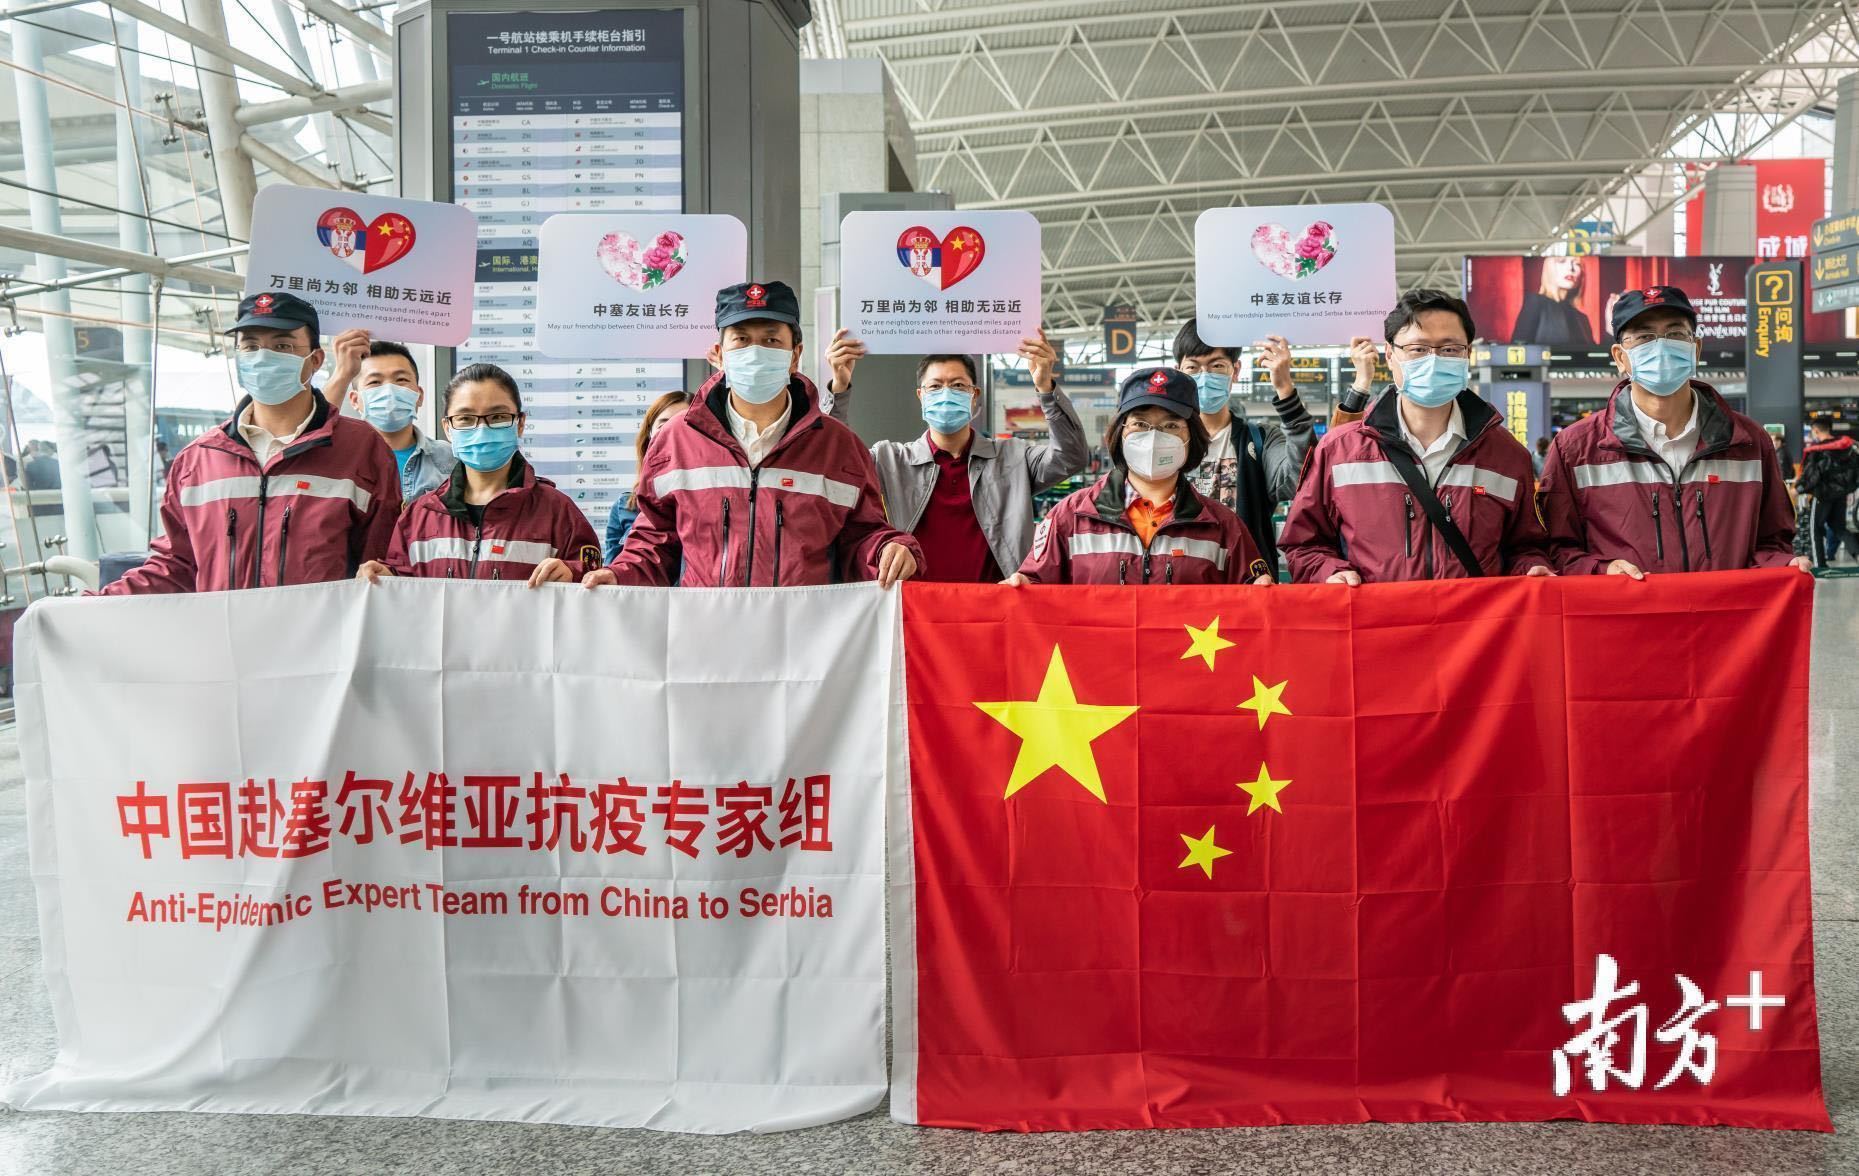 2020年3月21日，应塞尔维亚政府请求，中国政府派出由广东省卫生健康委组建的赴塞尔维亚抗疫医疗专家组。